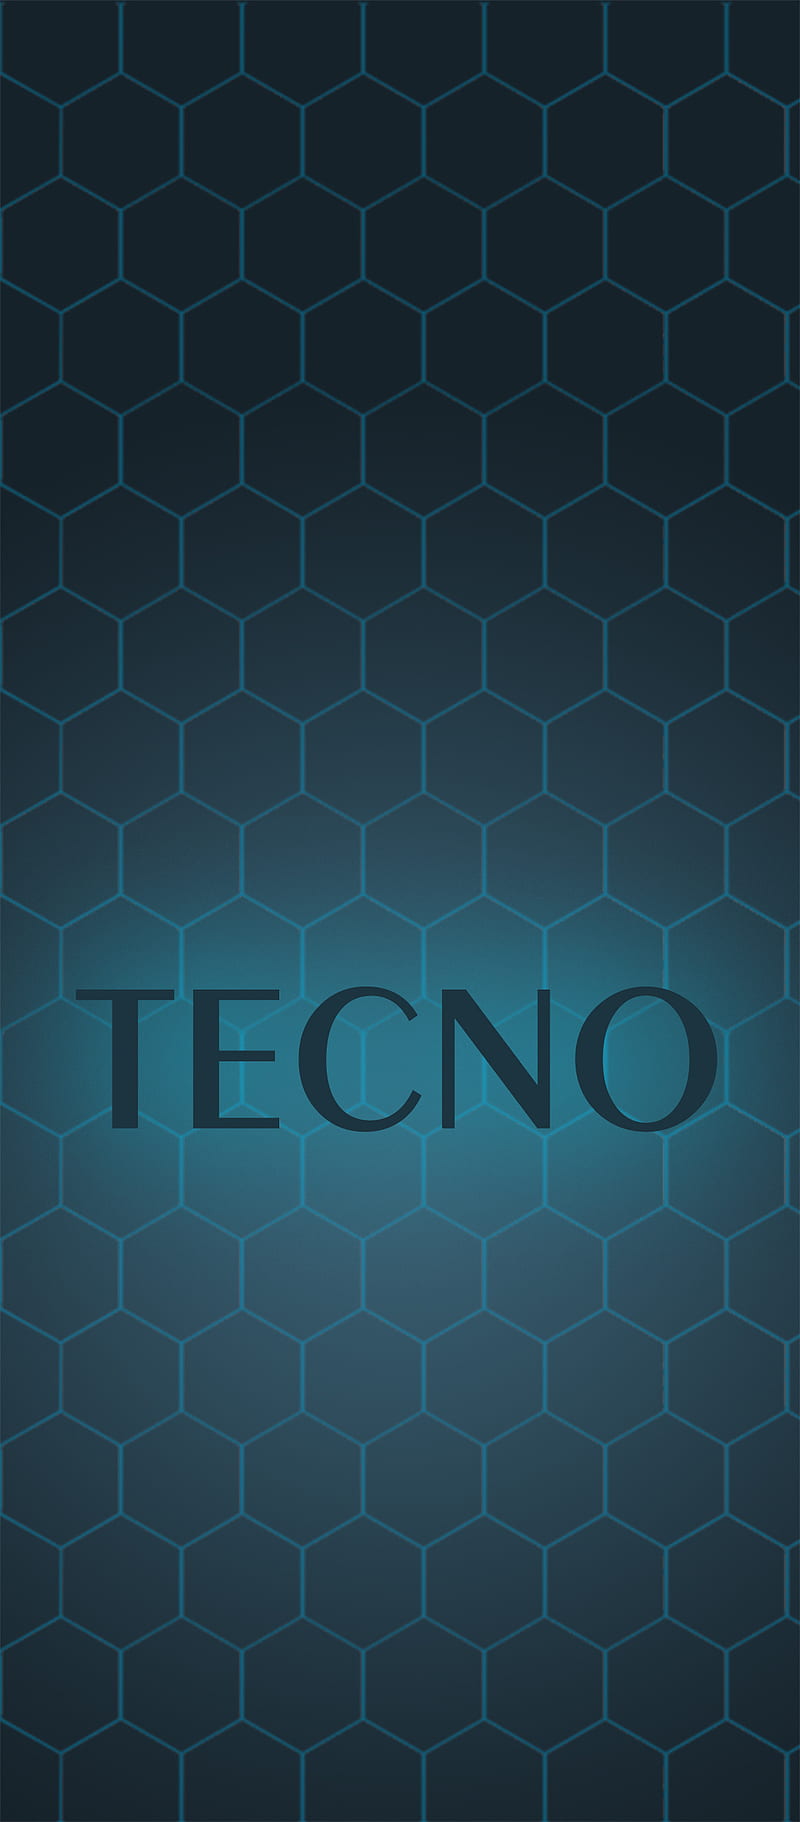 Techno wallpaper by VelvetLoz on DeviantArt